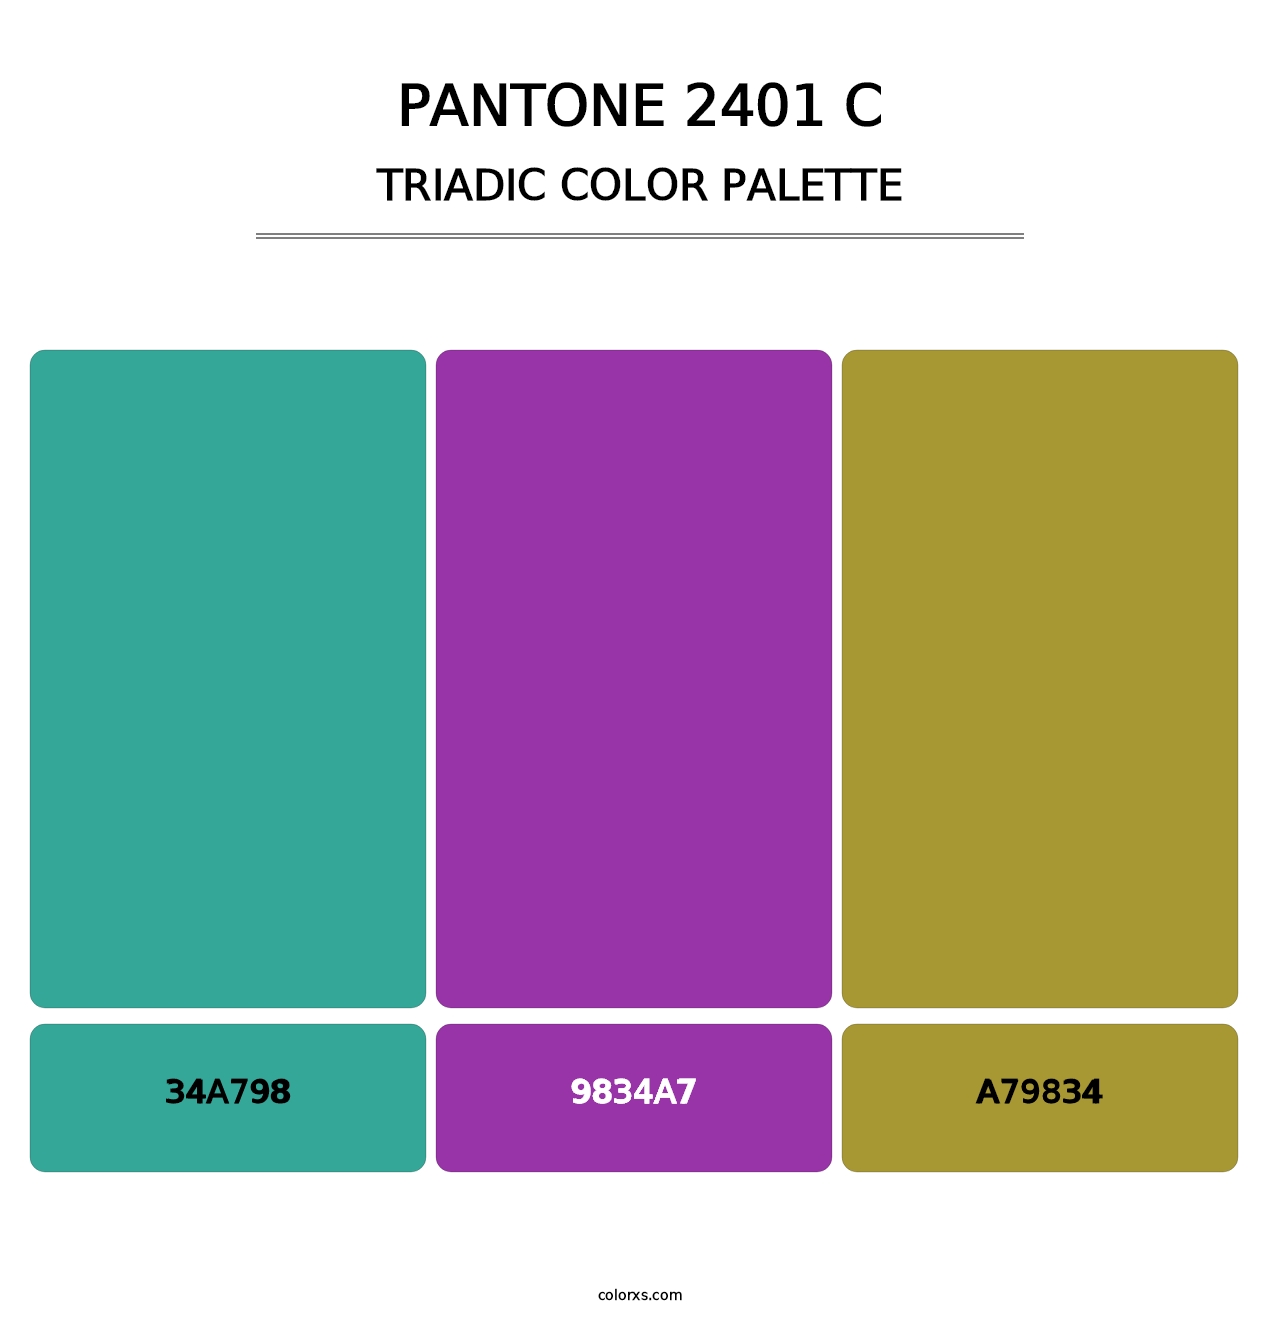 PANTONE 2401 C - Triadic Color Palette